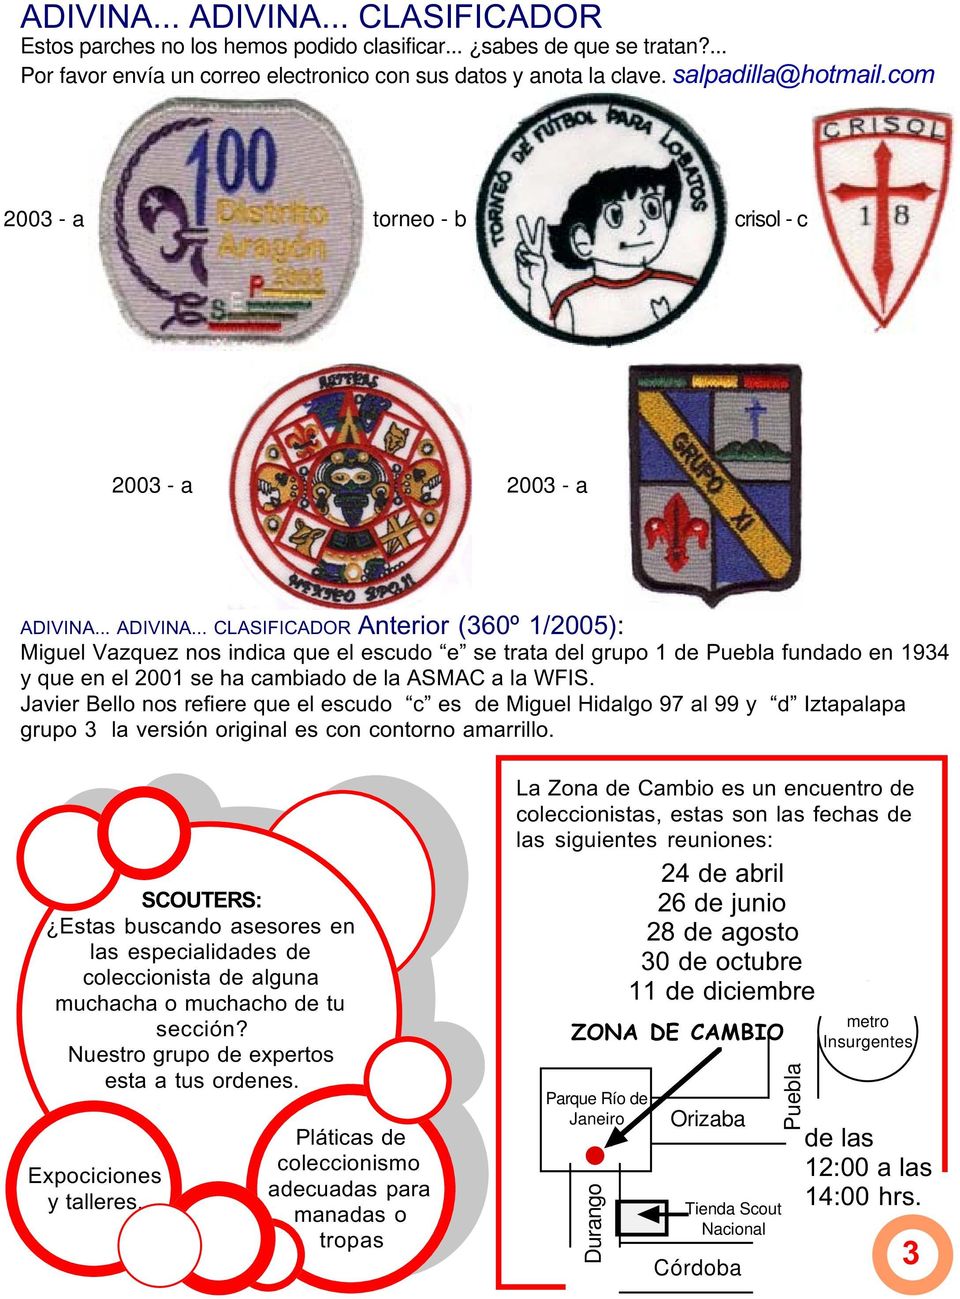 .. ADIVINA... CLASIFICADOR Anterior (360º 1/2005): Miguel Vazquez nos indica que el escudo e se trata del grupo 1 de Puebla fundado en 1934 y que en el 2001 se ha cambiado de la ASMAC a la WFIS.